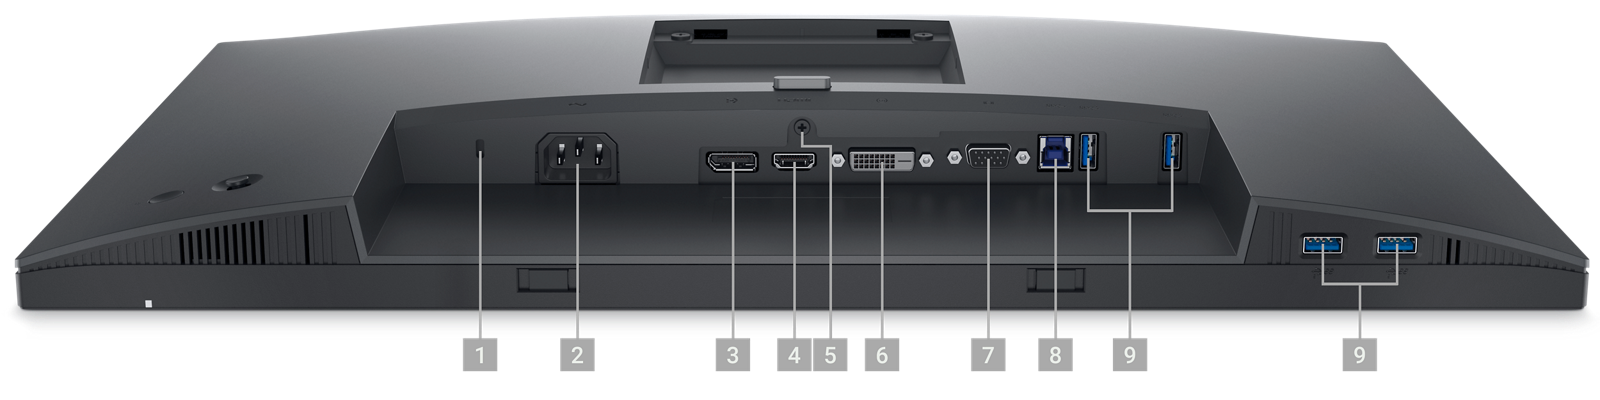 Zdjęcie przedstawiające monitor Dell P2423 z wyłączonym ekranem i cyframi 1–9 pokazującymi porty pod produktem.